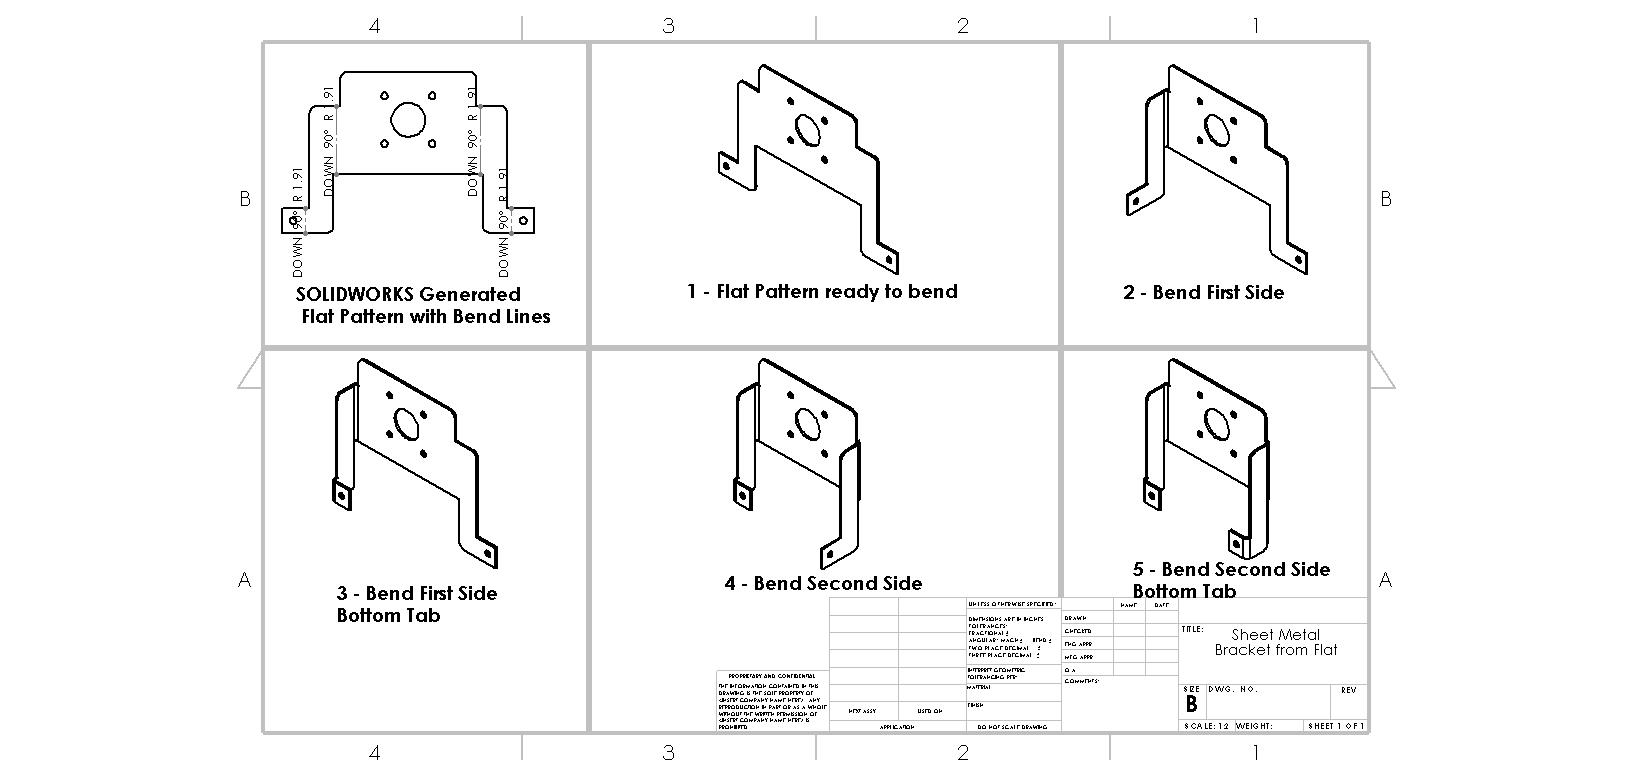 Guide to Sheet Metal Bending in Solidworks - SendCutSend